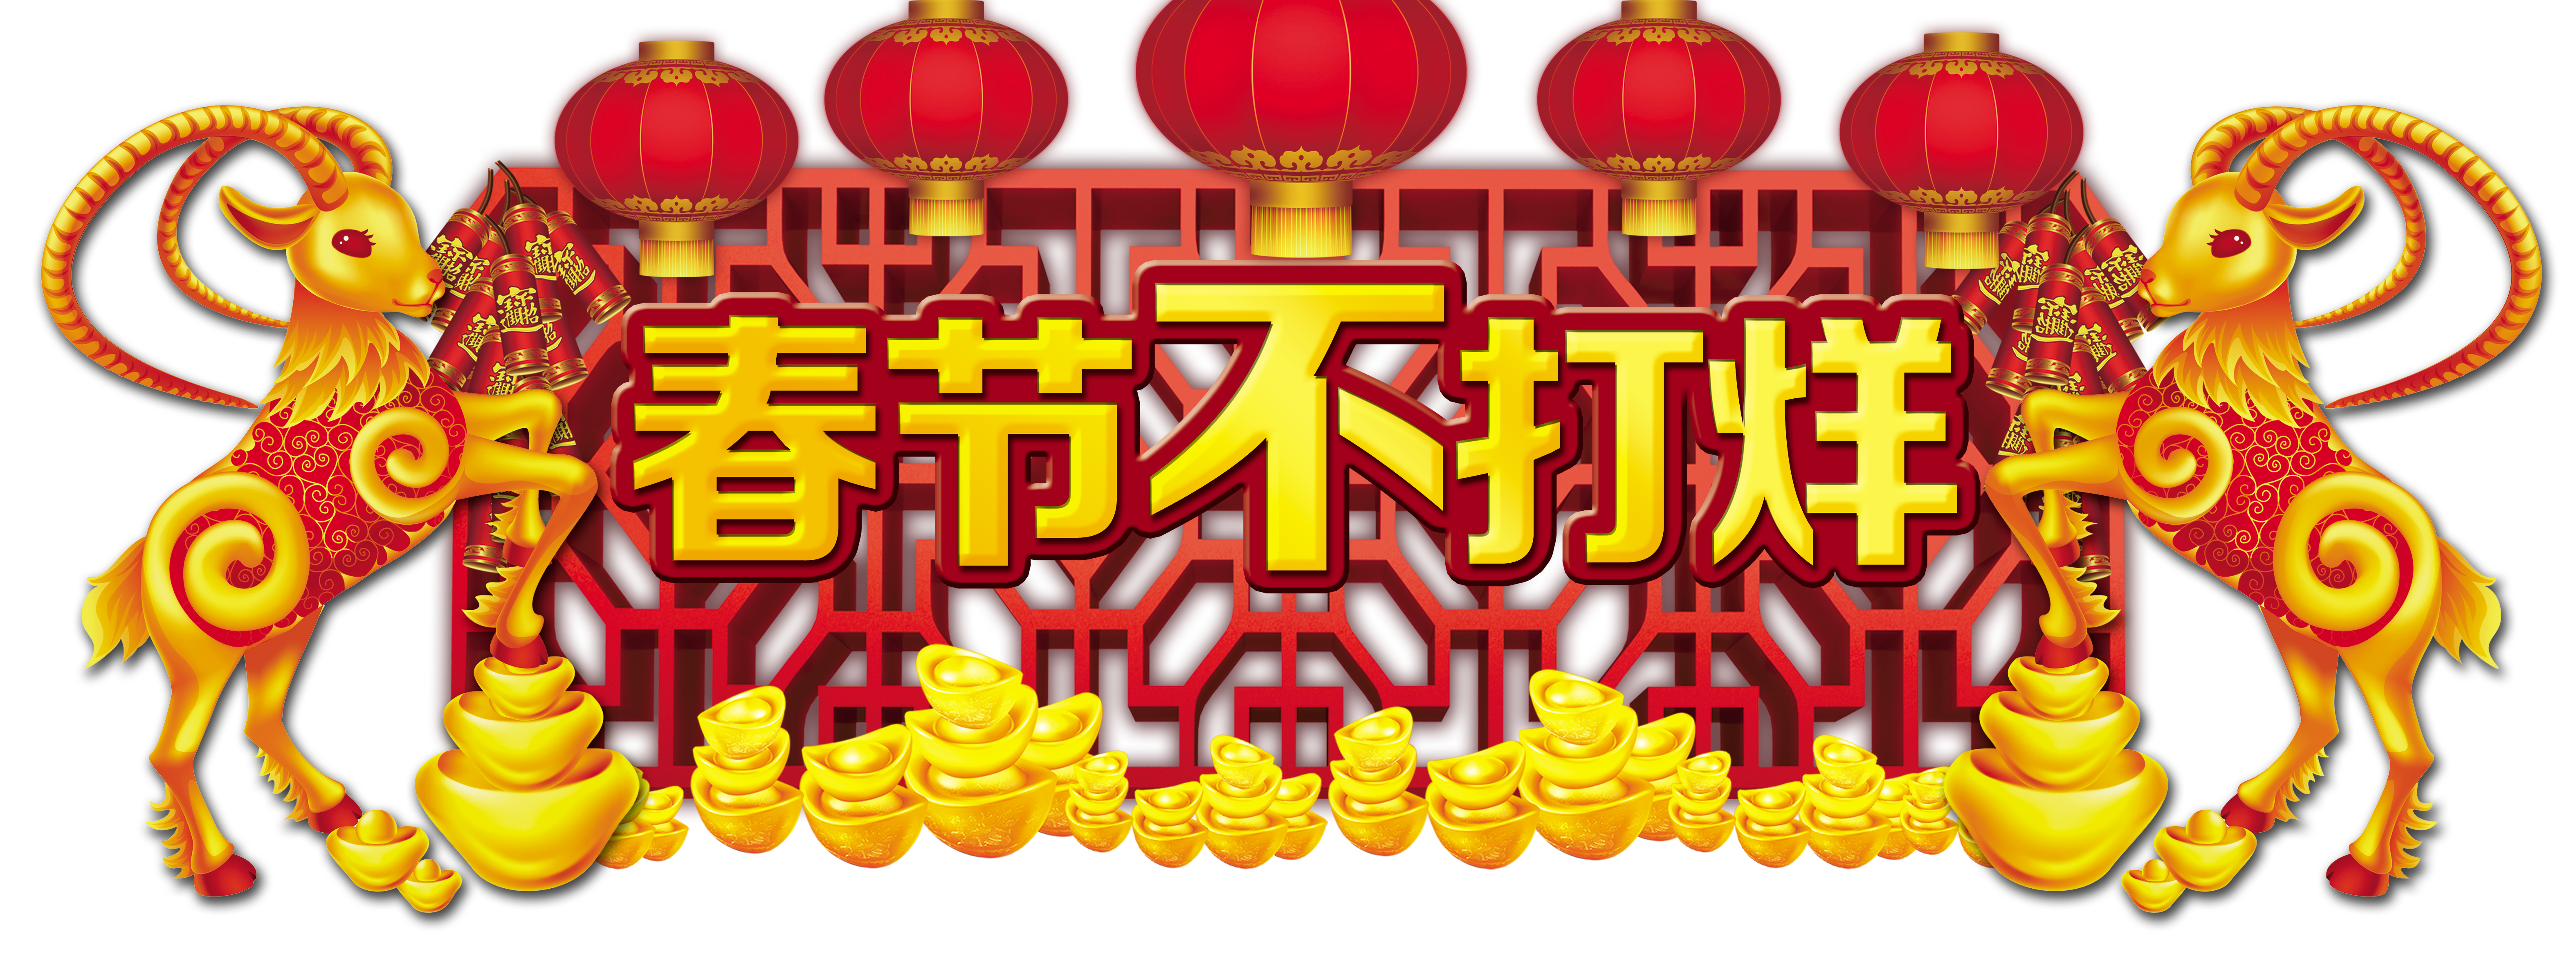 Chinesisches Neujahr und Frühlingsfest sind nicht geschlossen